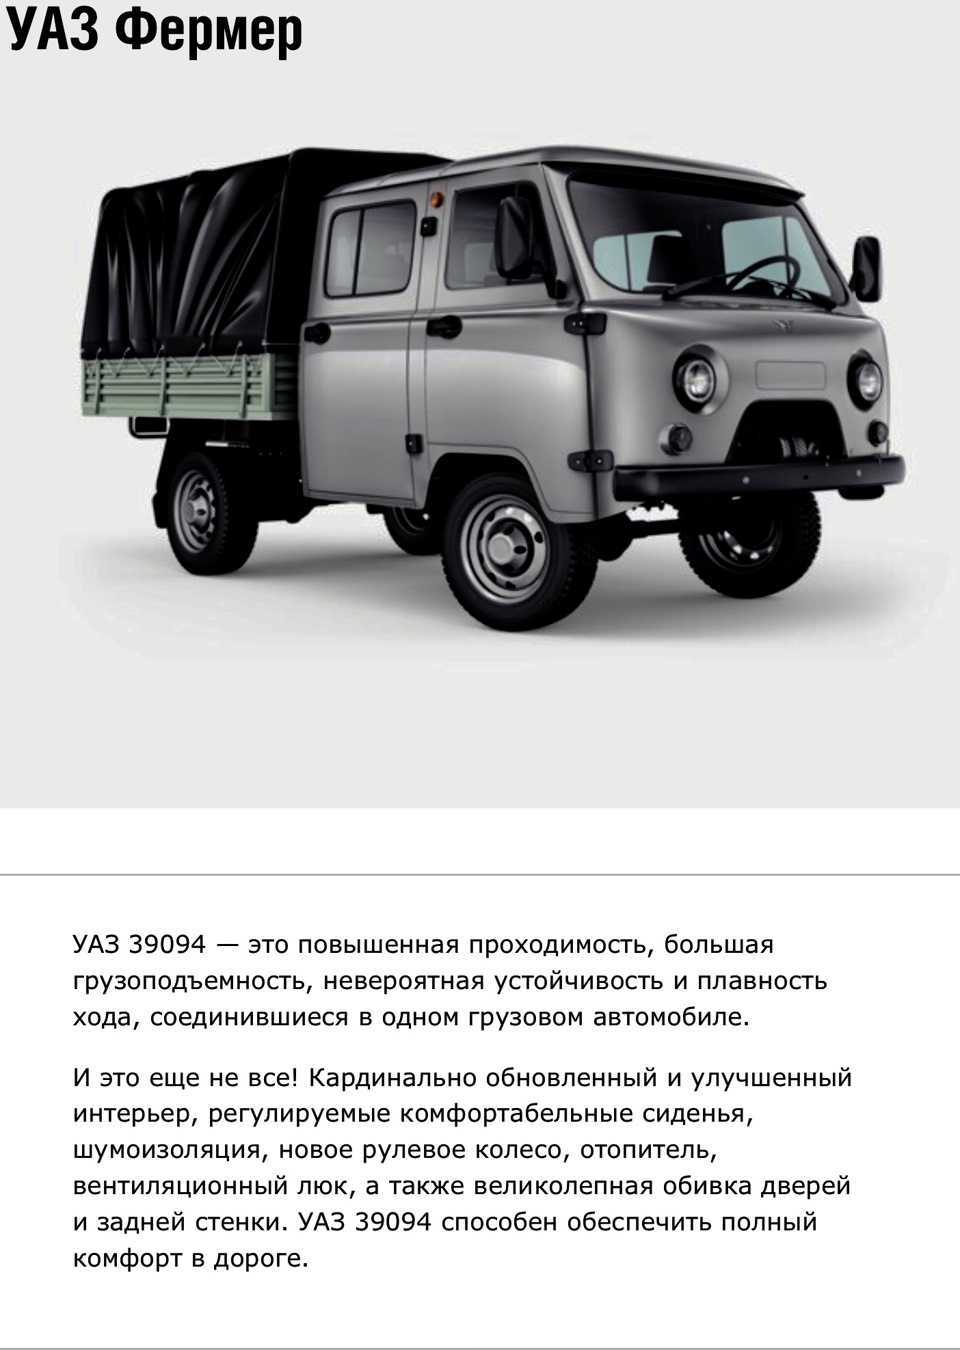 Микроавтобус уаз-3303 т-12.02 кубанец, книжная лавка и автоклуб